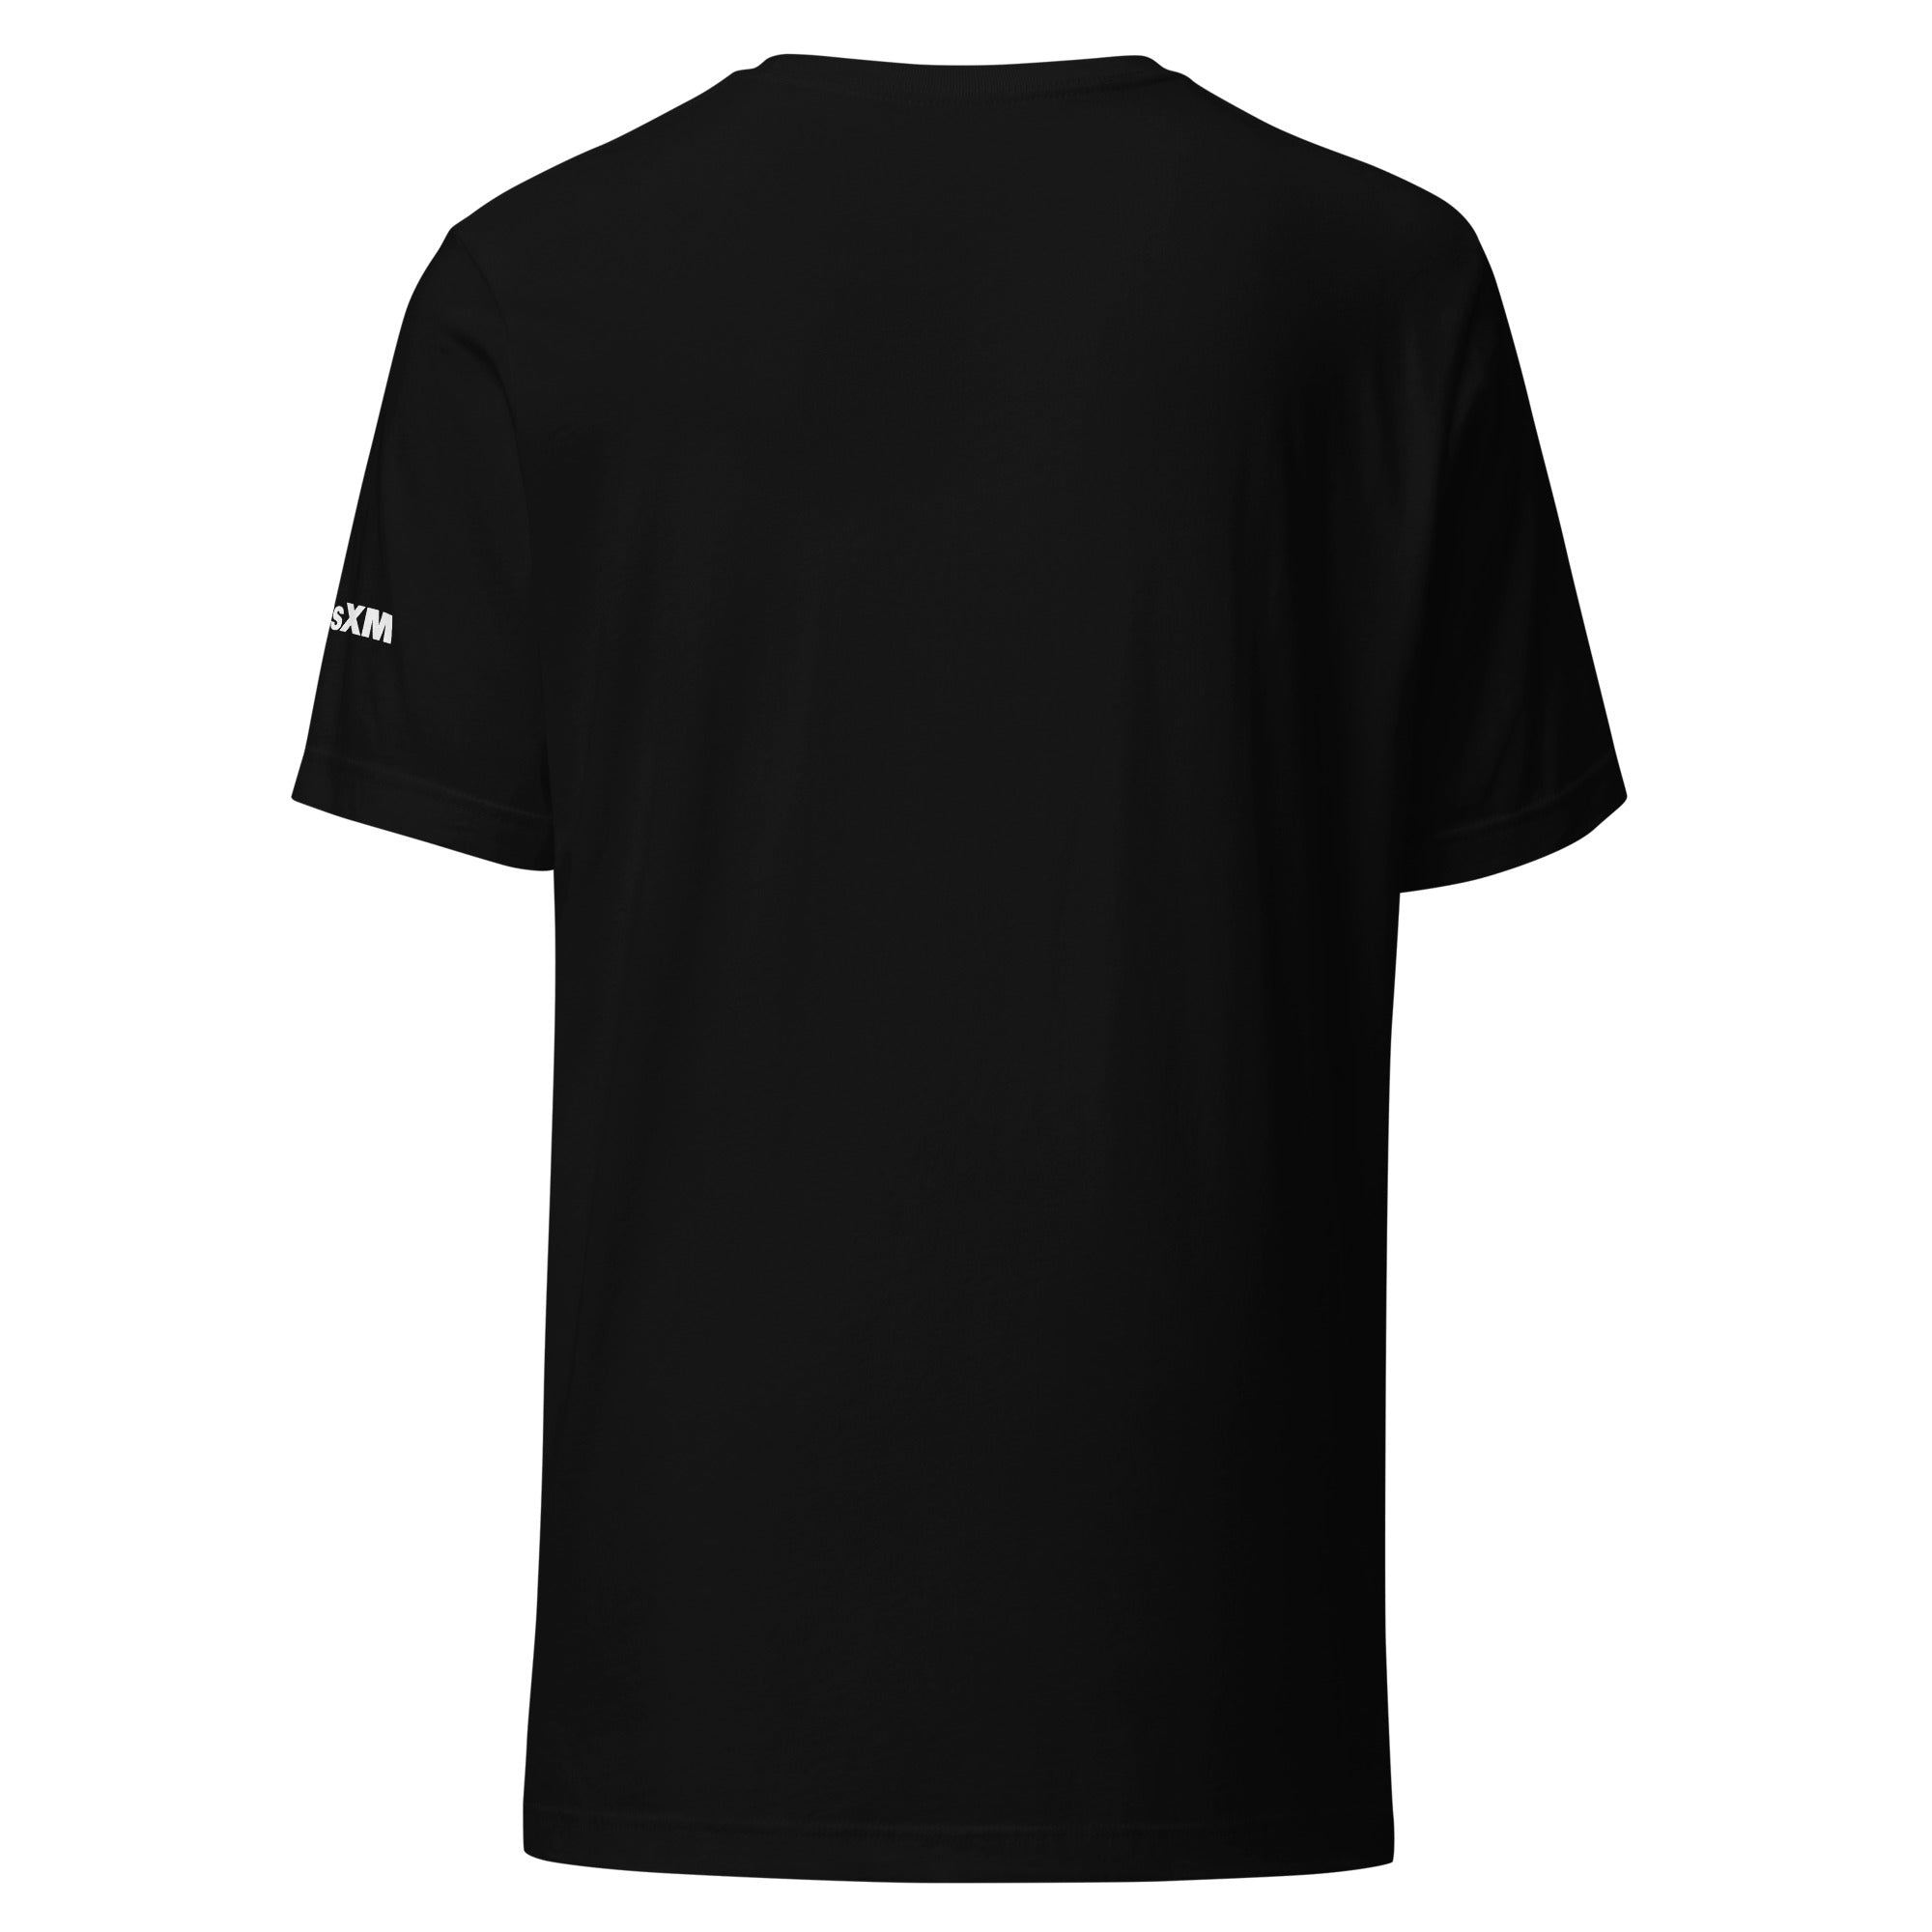 RockBar: T-shirt (Black)